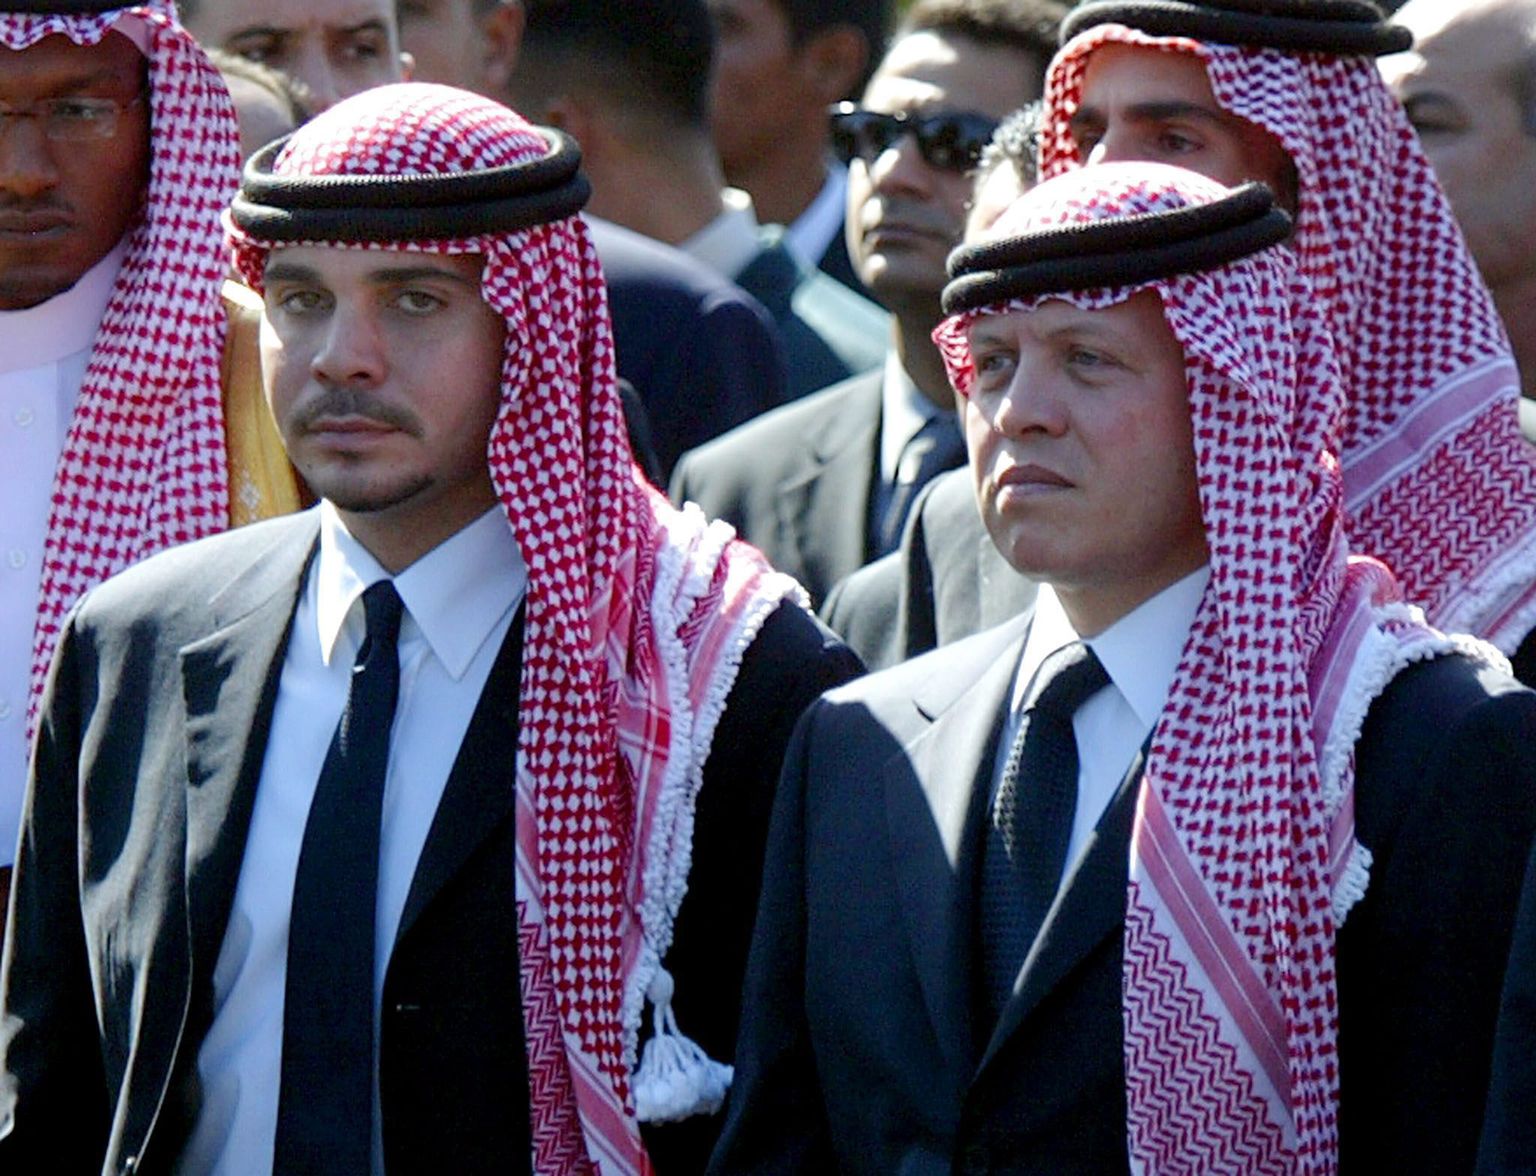 Jordaania endine kroonprints Hamzah bin Al Hussein (vasakul) ja ta poolvend, Jordaania kuningas Abullah II